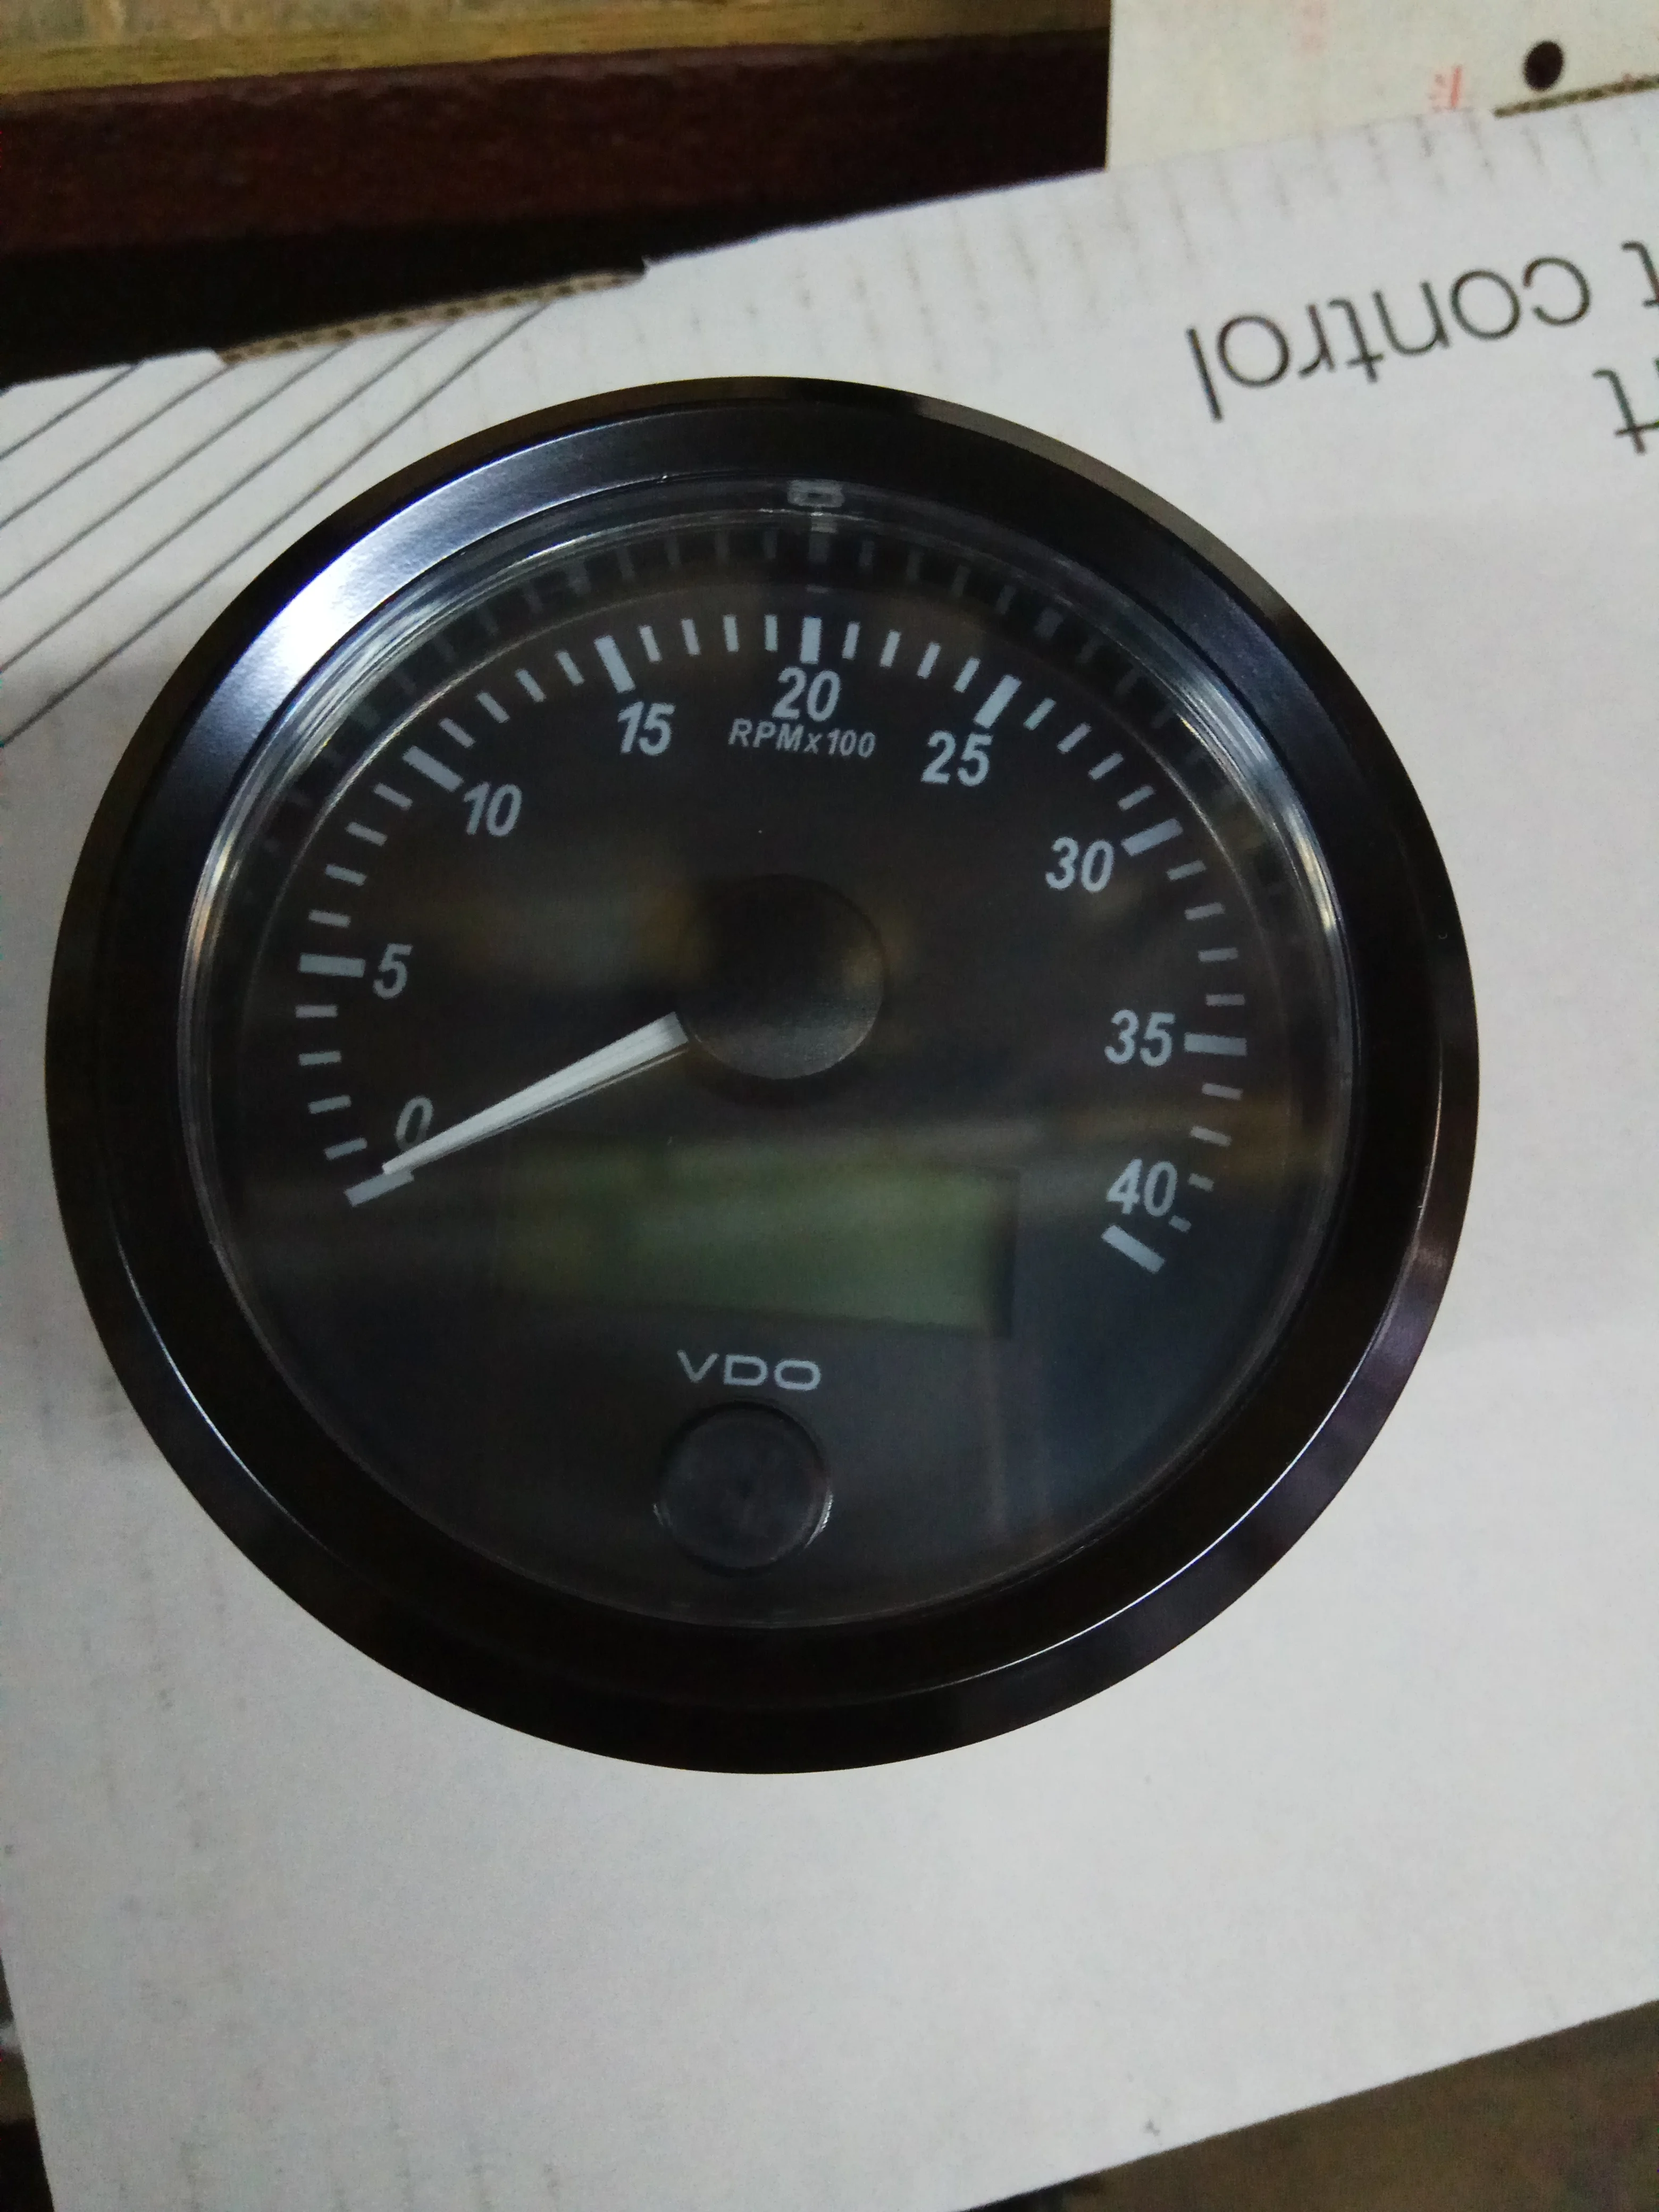 ursprünglicher vdo diesel tachometer des vdo diesel tachometers